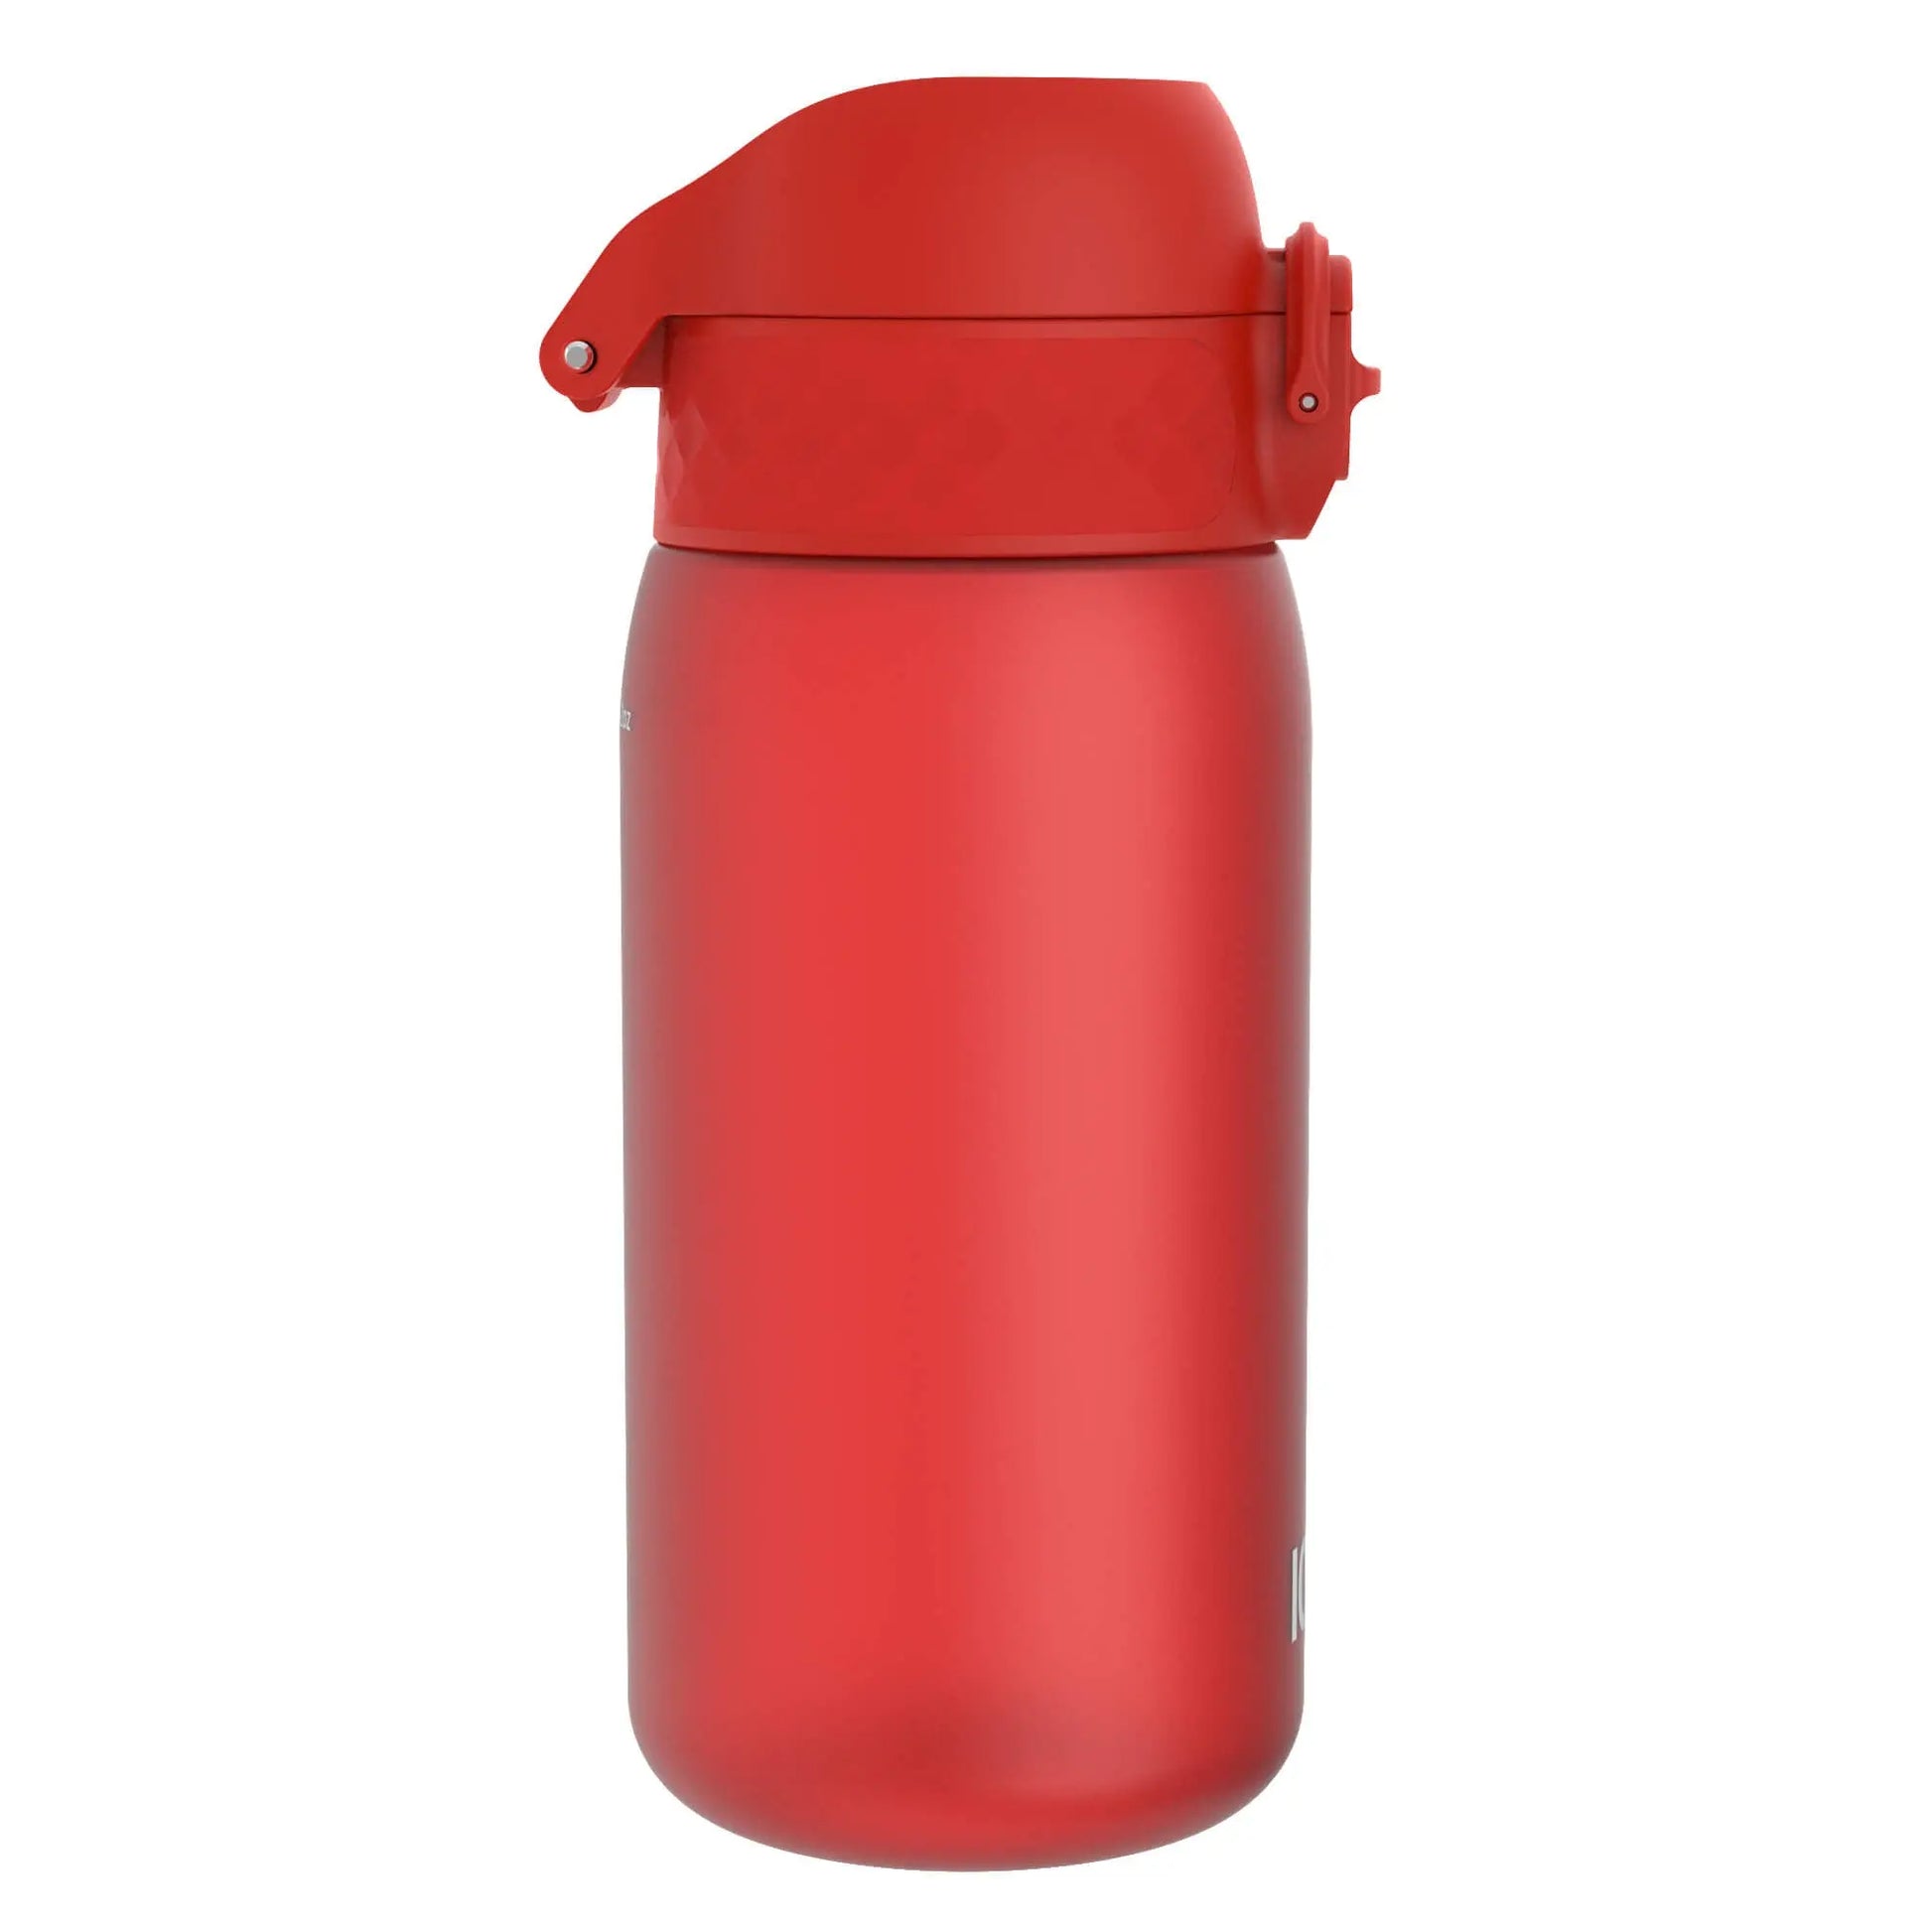 Leak Proof Kids Water Bottle, Recyclon™, Red, 350ml (12oz) - ION8